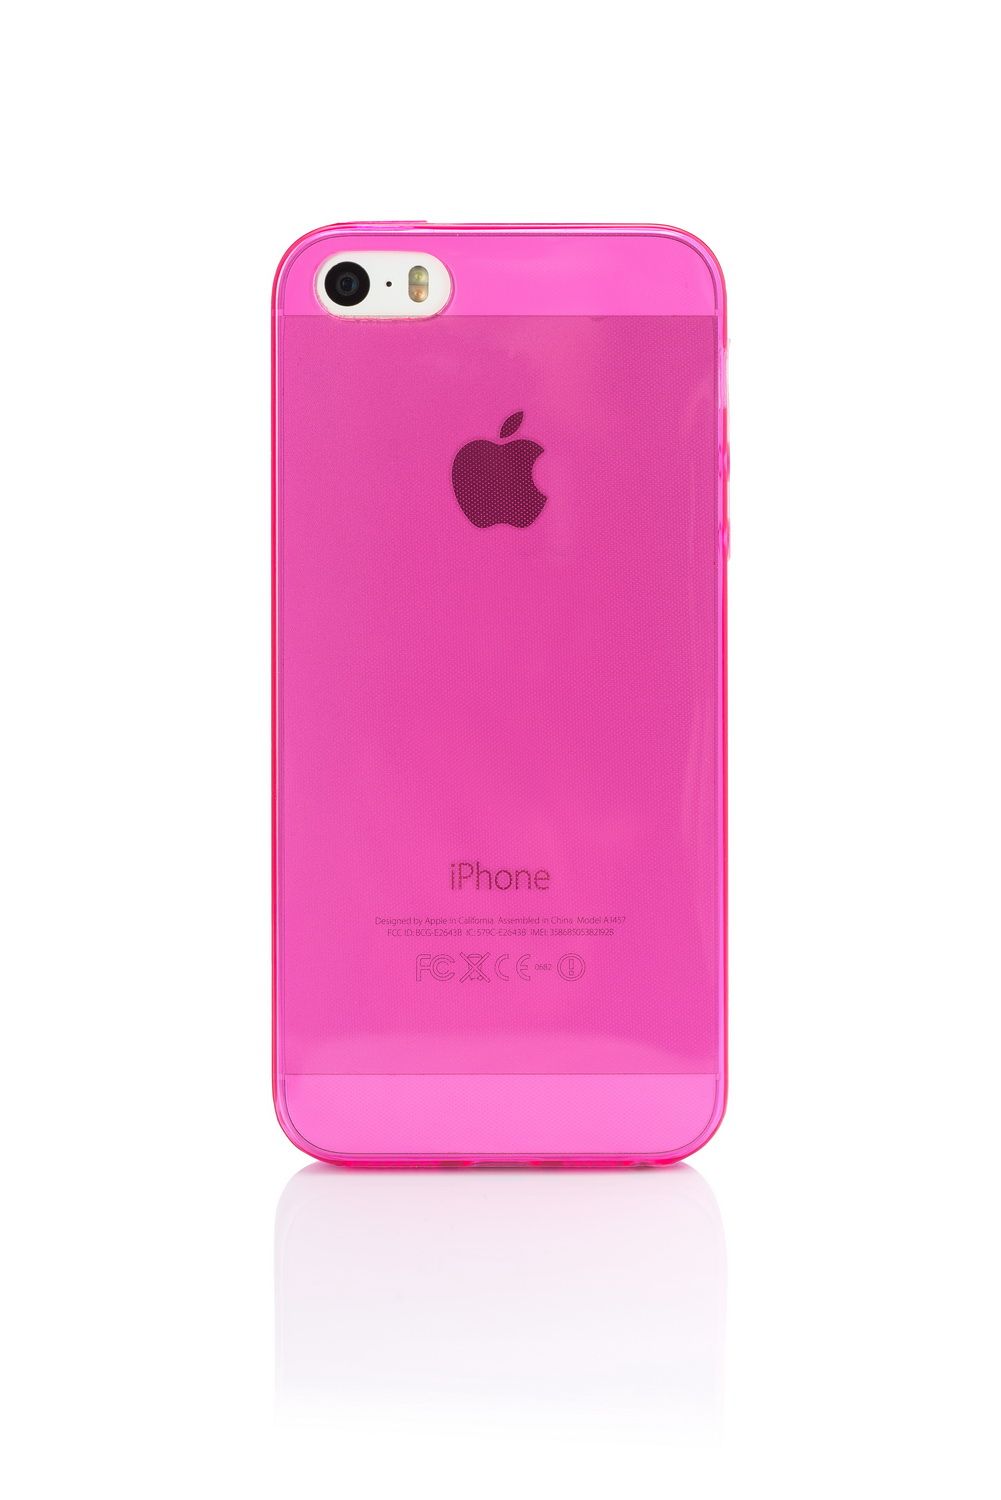 15 512 розовый. Матовое покрытие чехла. Угловая накладка iphone. Матовое покрытие на айфон. Айфон 5 с розовый цвет картинки.